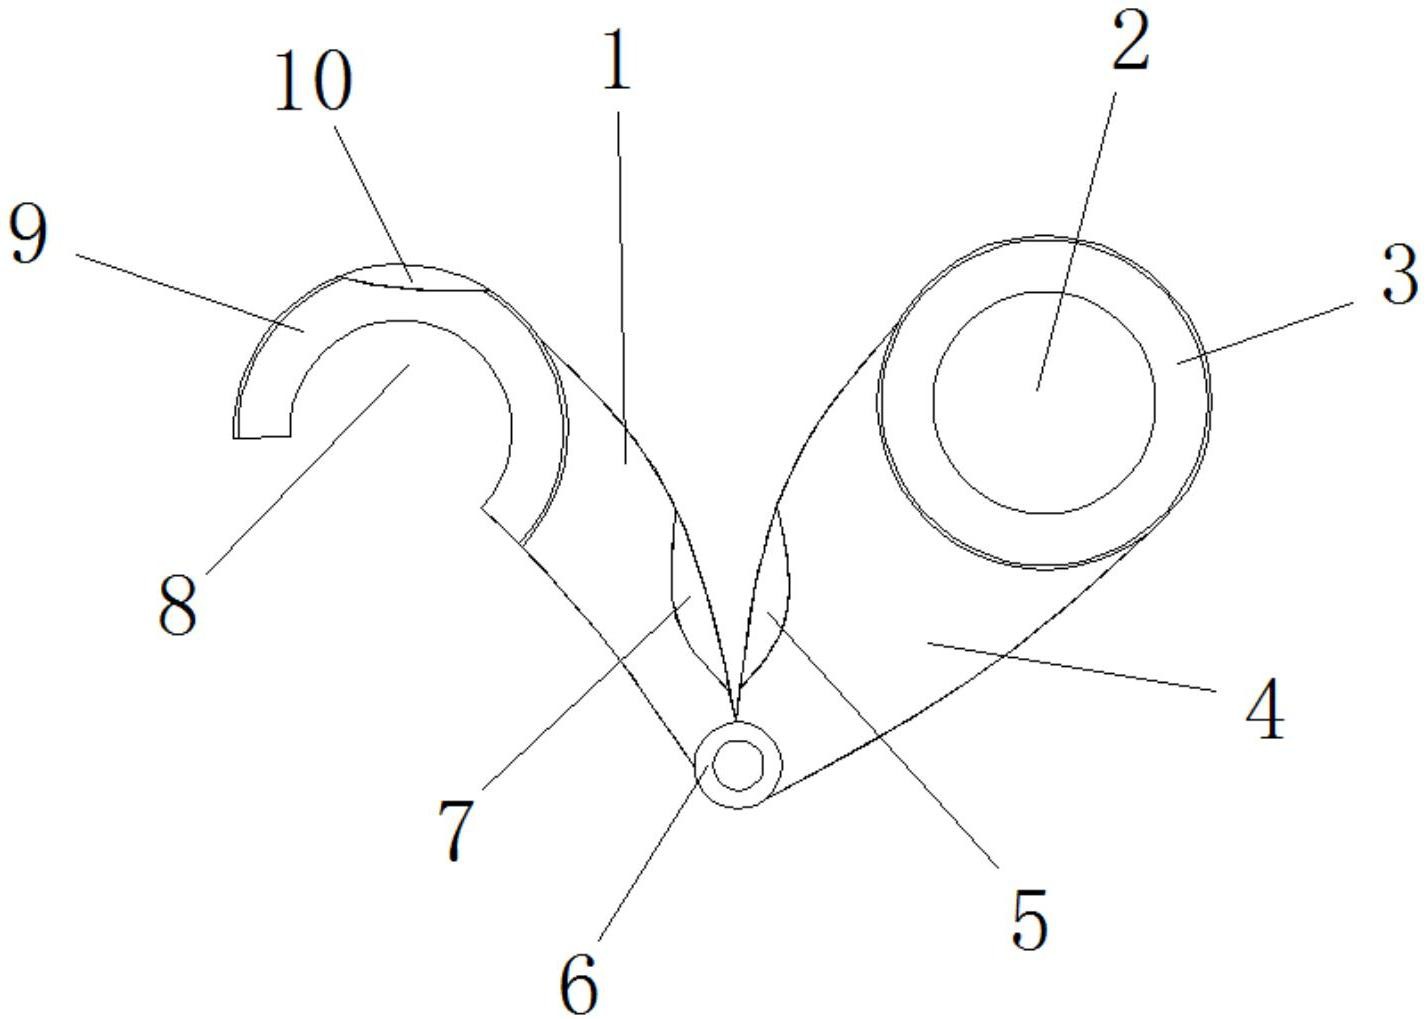 包括第一把杆和第二把杆,所述第一把杆的顶端固定连接有第一把环,所述